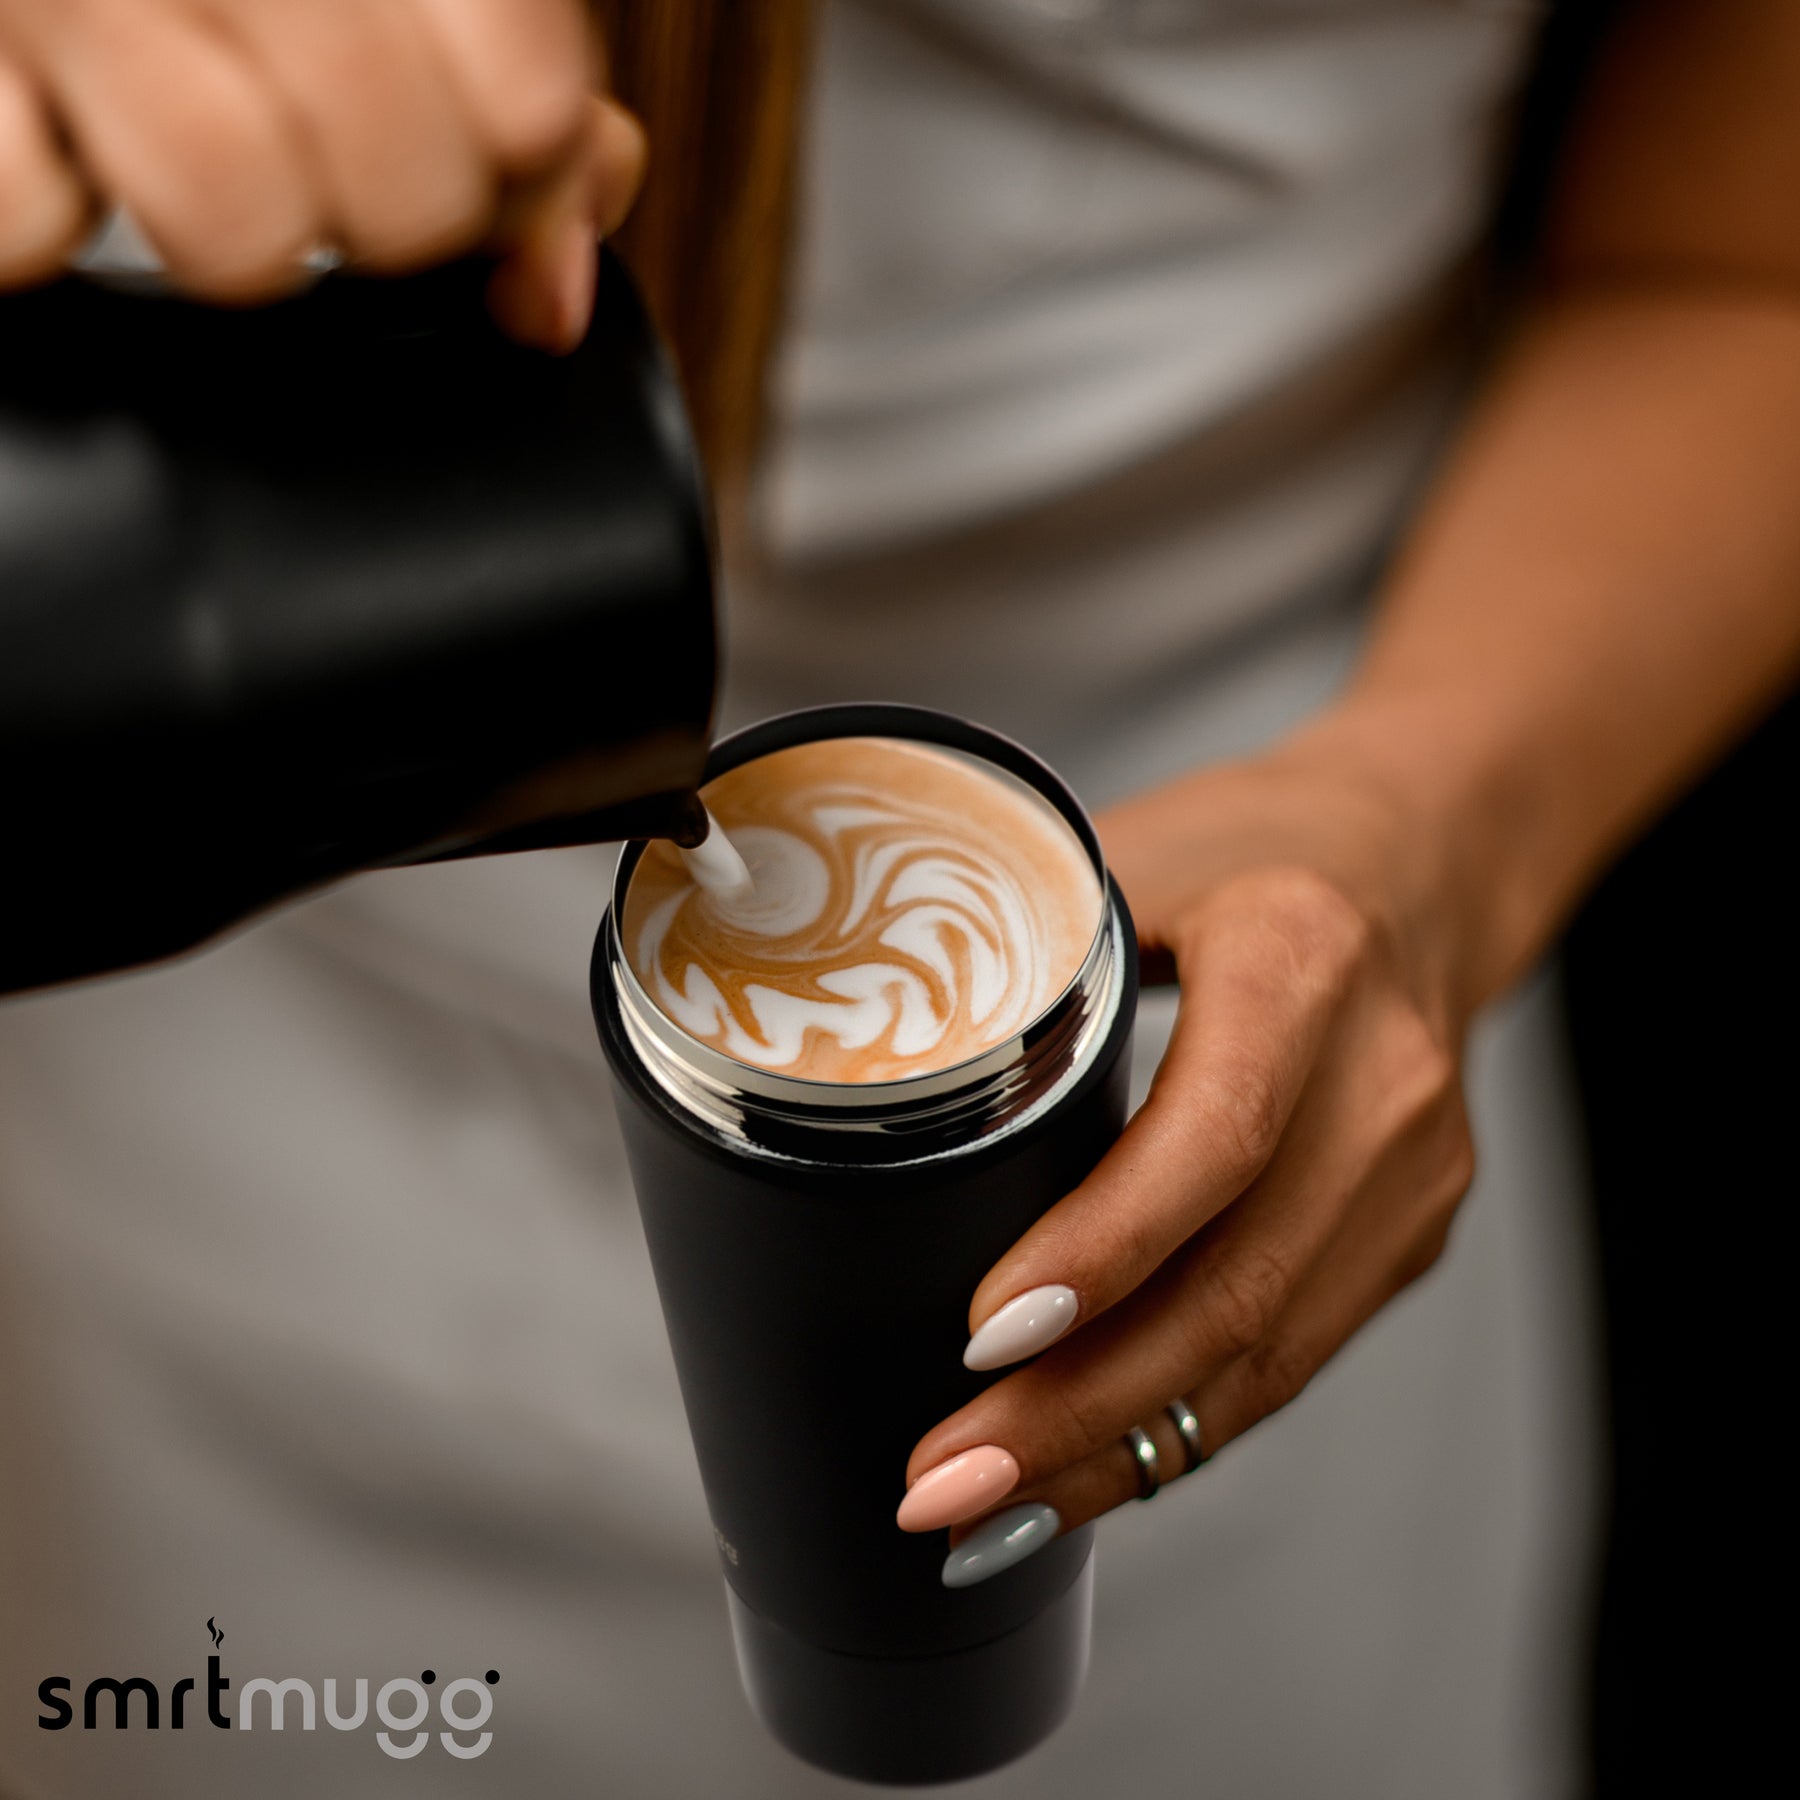  SMRTMUGG Heated Coffee Mug, All Day Battery Life